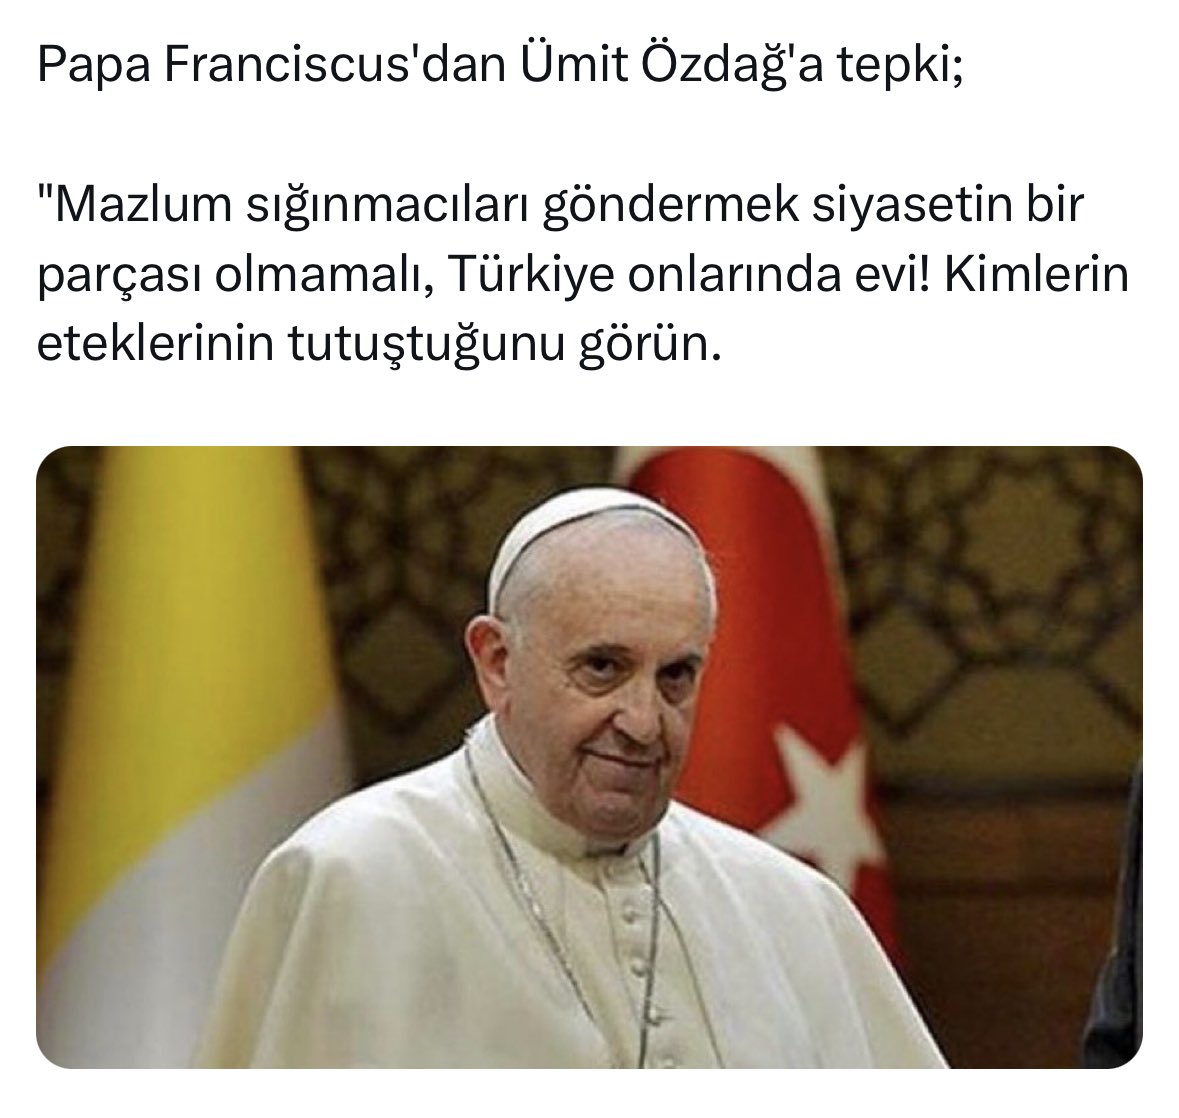 Eteği tutuştu diye söylediğin kesim ve kitle Öz ve Öz Türk Milliyetçiliği... Papa bu gidişle olur , yes pappa. Fatih'in yarım bıraktığı raconu kesecek ne Fetih'ler var.